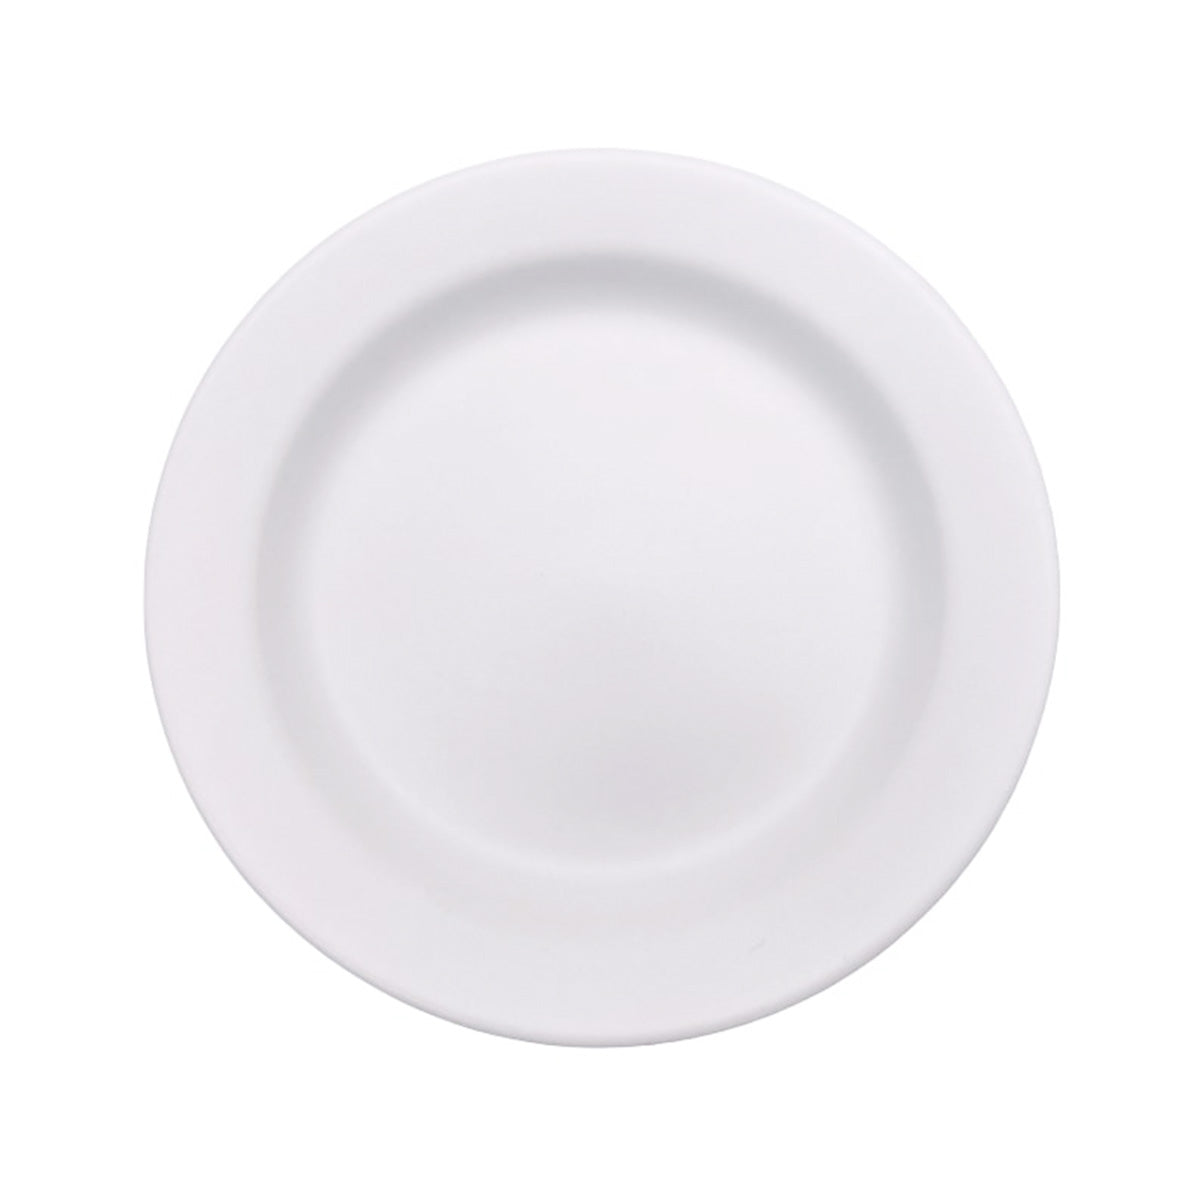 【在庫限り】皿 取り皿 プレート Tokinone PB.小皿 ホワイト 12x12x1.5cm 049045